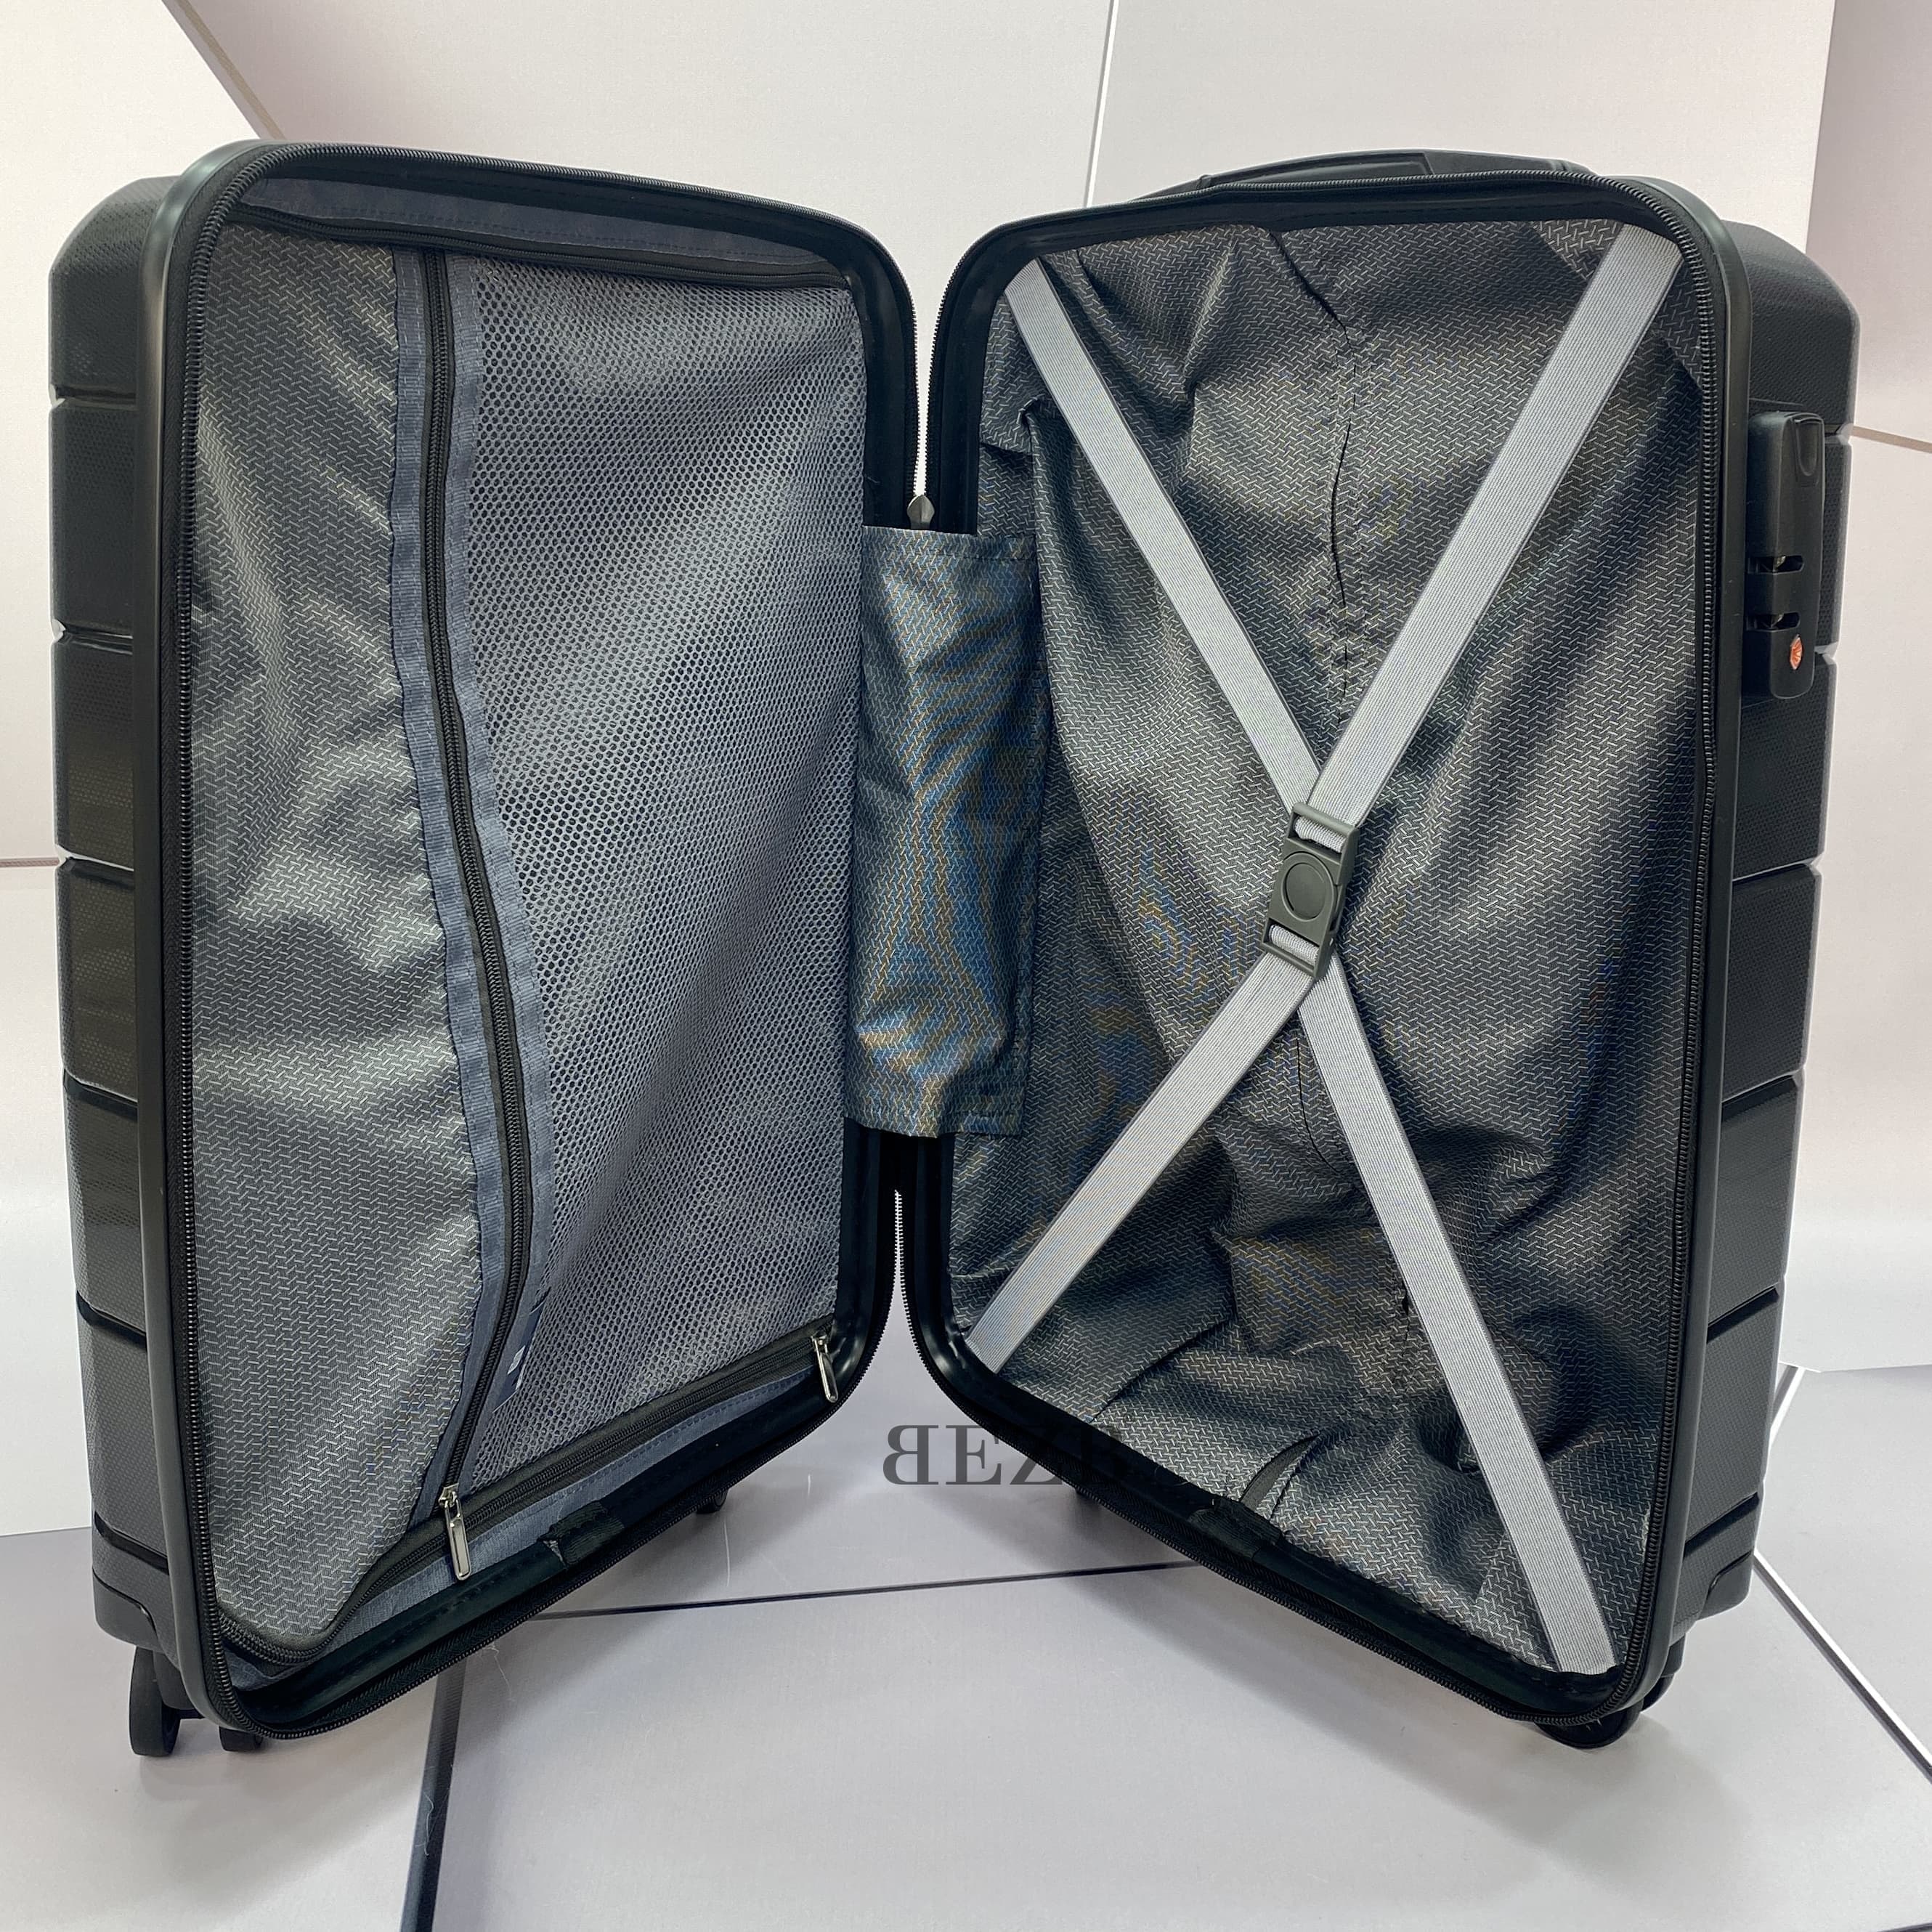 Маленький чемодан для ручьной клади из полипропилена MCS V366 S BLACK! Для 8-10 кг! - 2